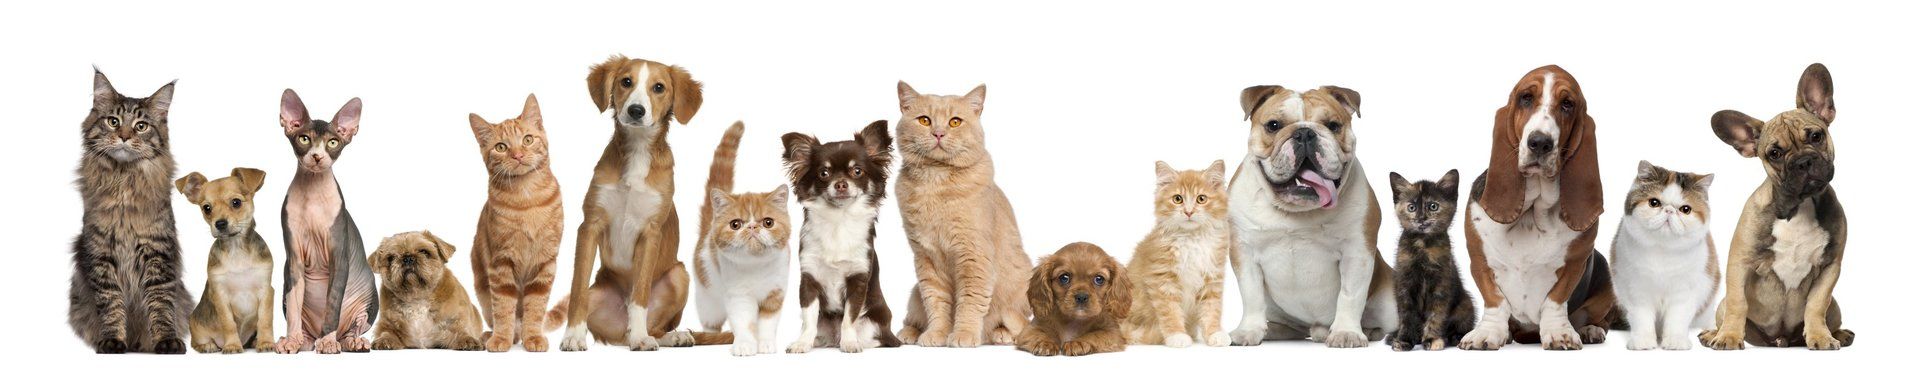 Détente Animal, comportementaliste animalier, participe au bien-être de vos compagnons canins & félins